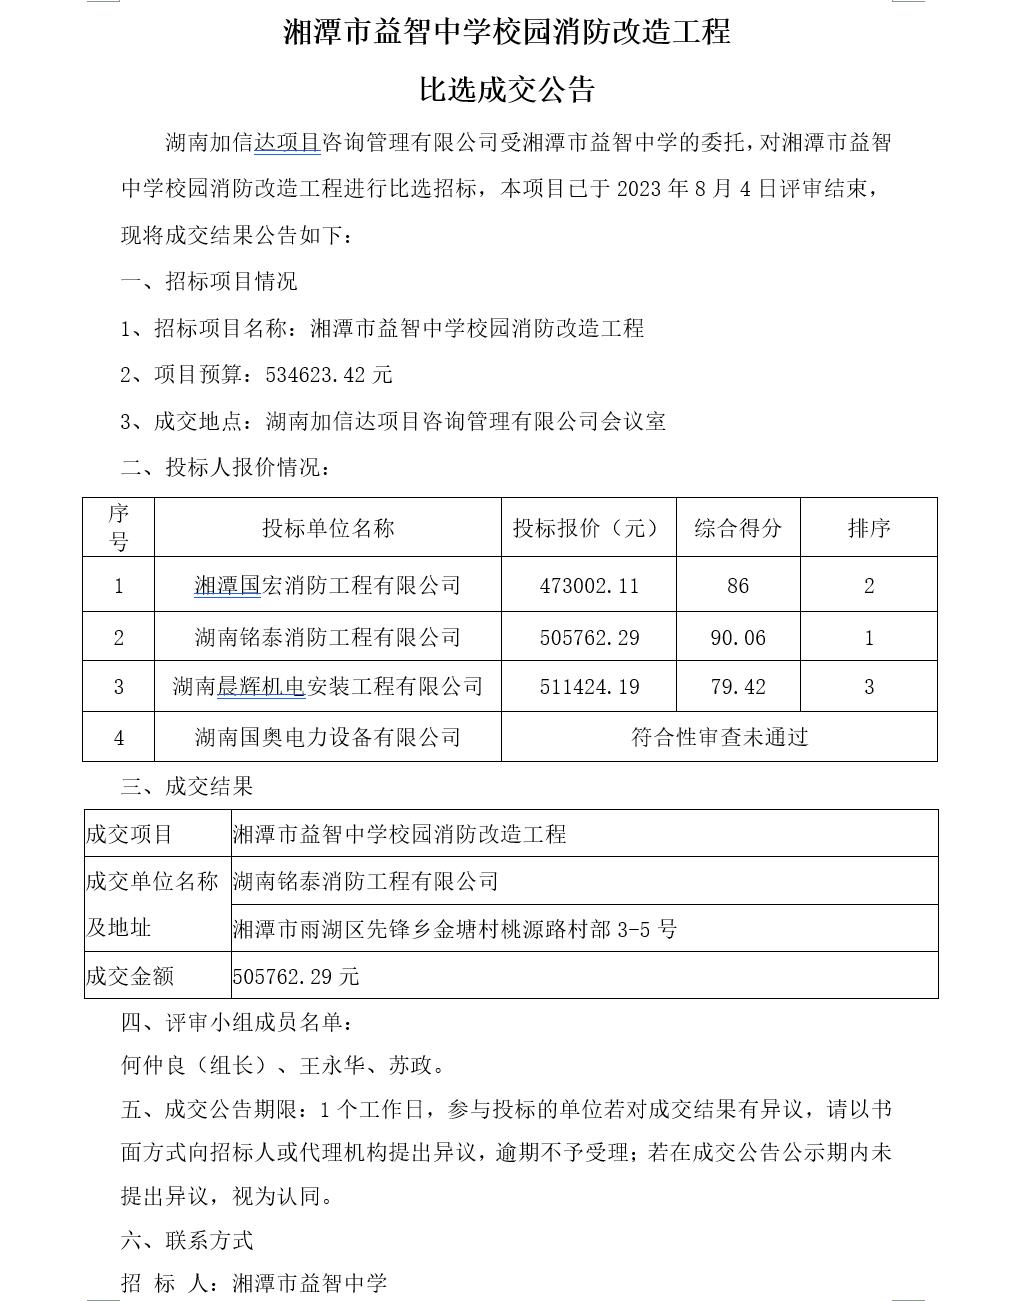 湘潭市益智中学校园消防改造工程比选成交公告